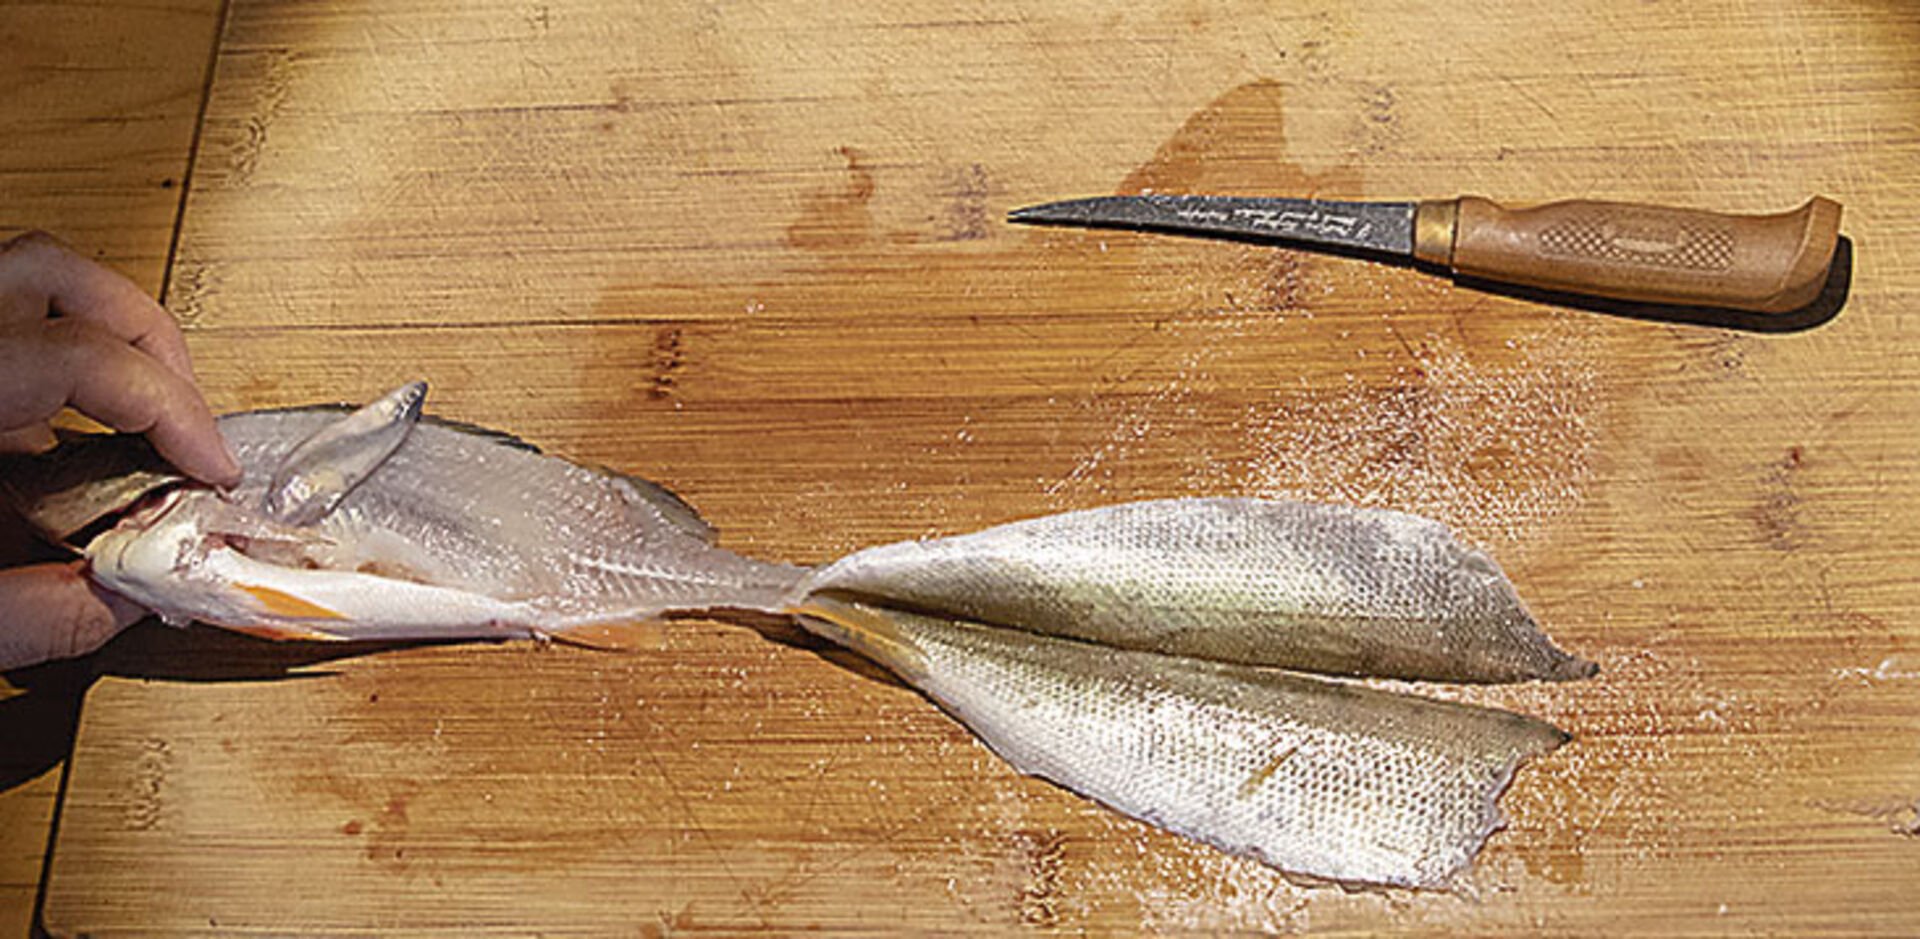  9 : Le résultat après (avec un peu d'entraînement) 90 secondes est des restes de poisson compacts sur une planche de cuisine assez propre et des filets prêts à cuire (voir grande image). Bon appétit !   